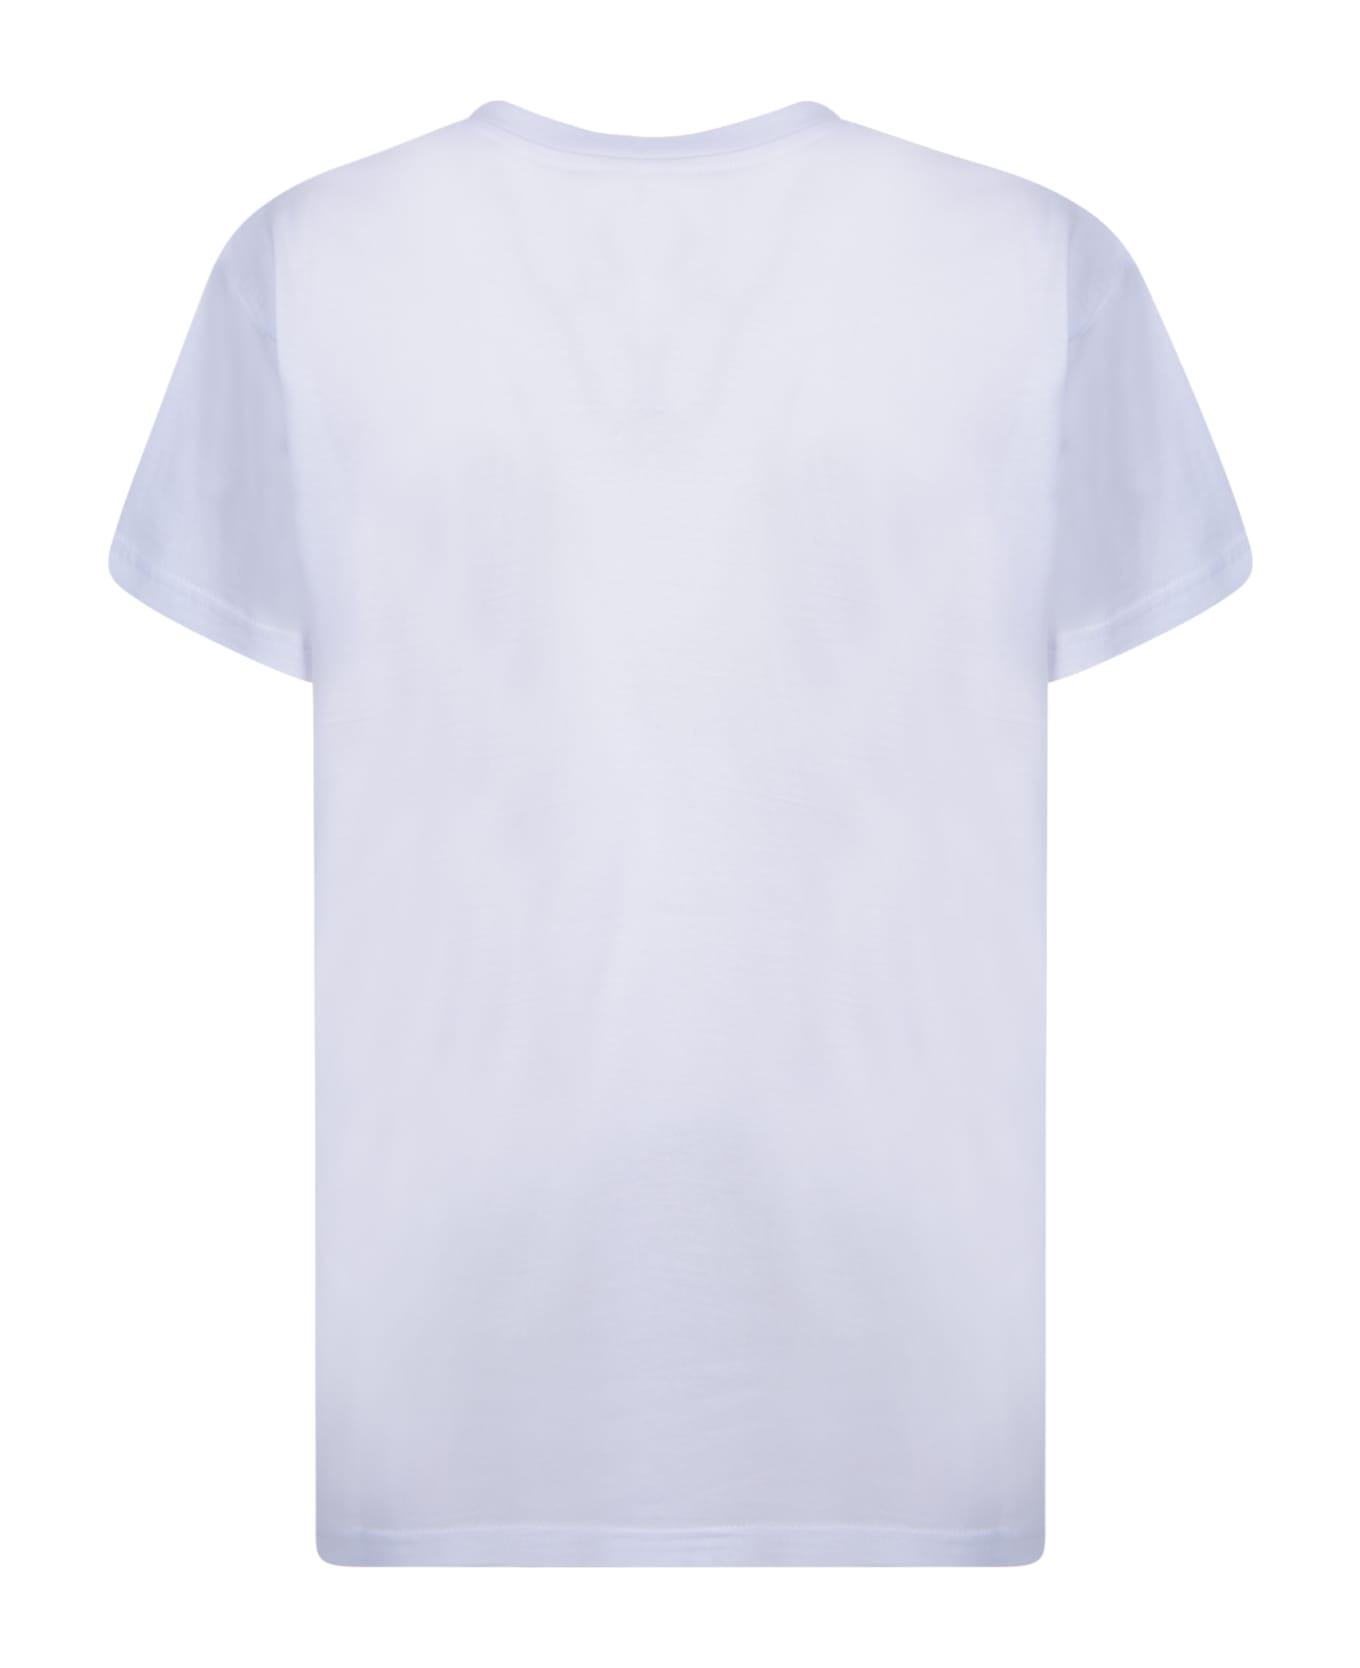 Alessandro Enriquez Santa Rosalia White T-shirt - White